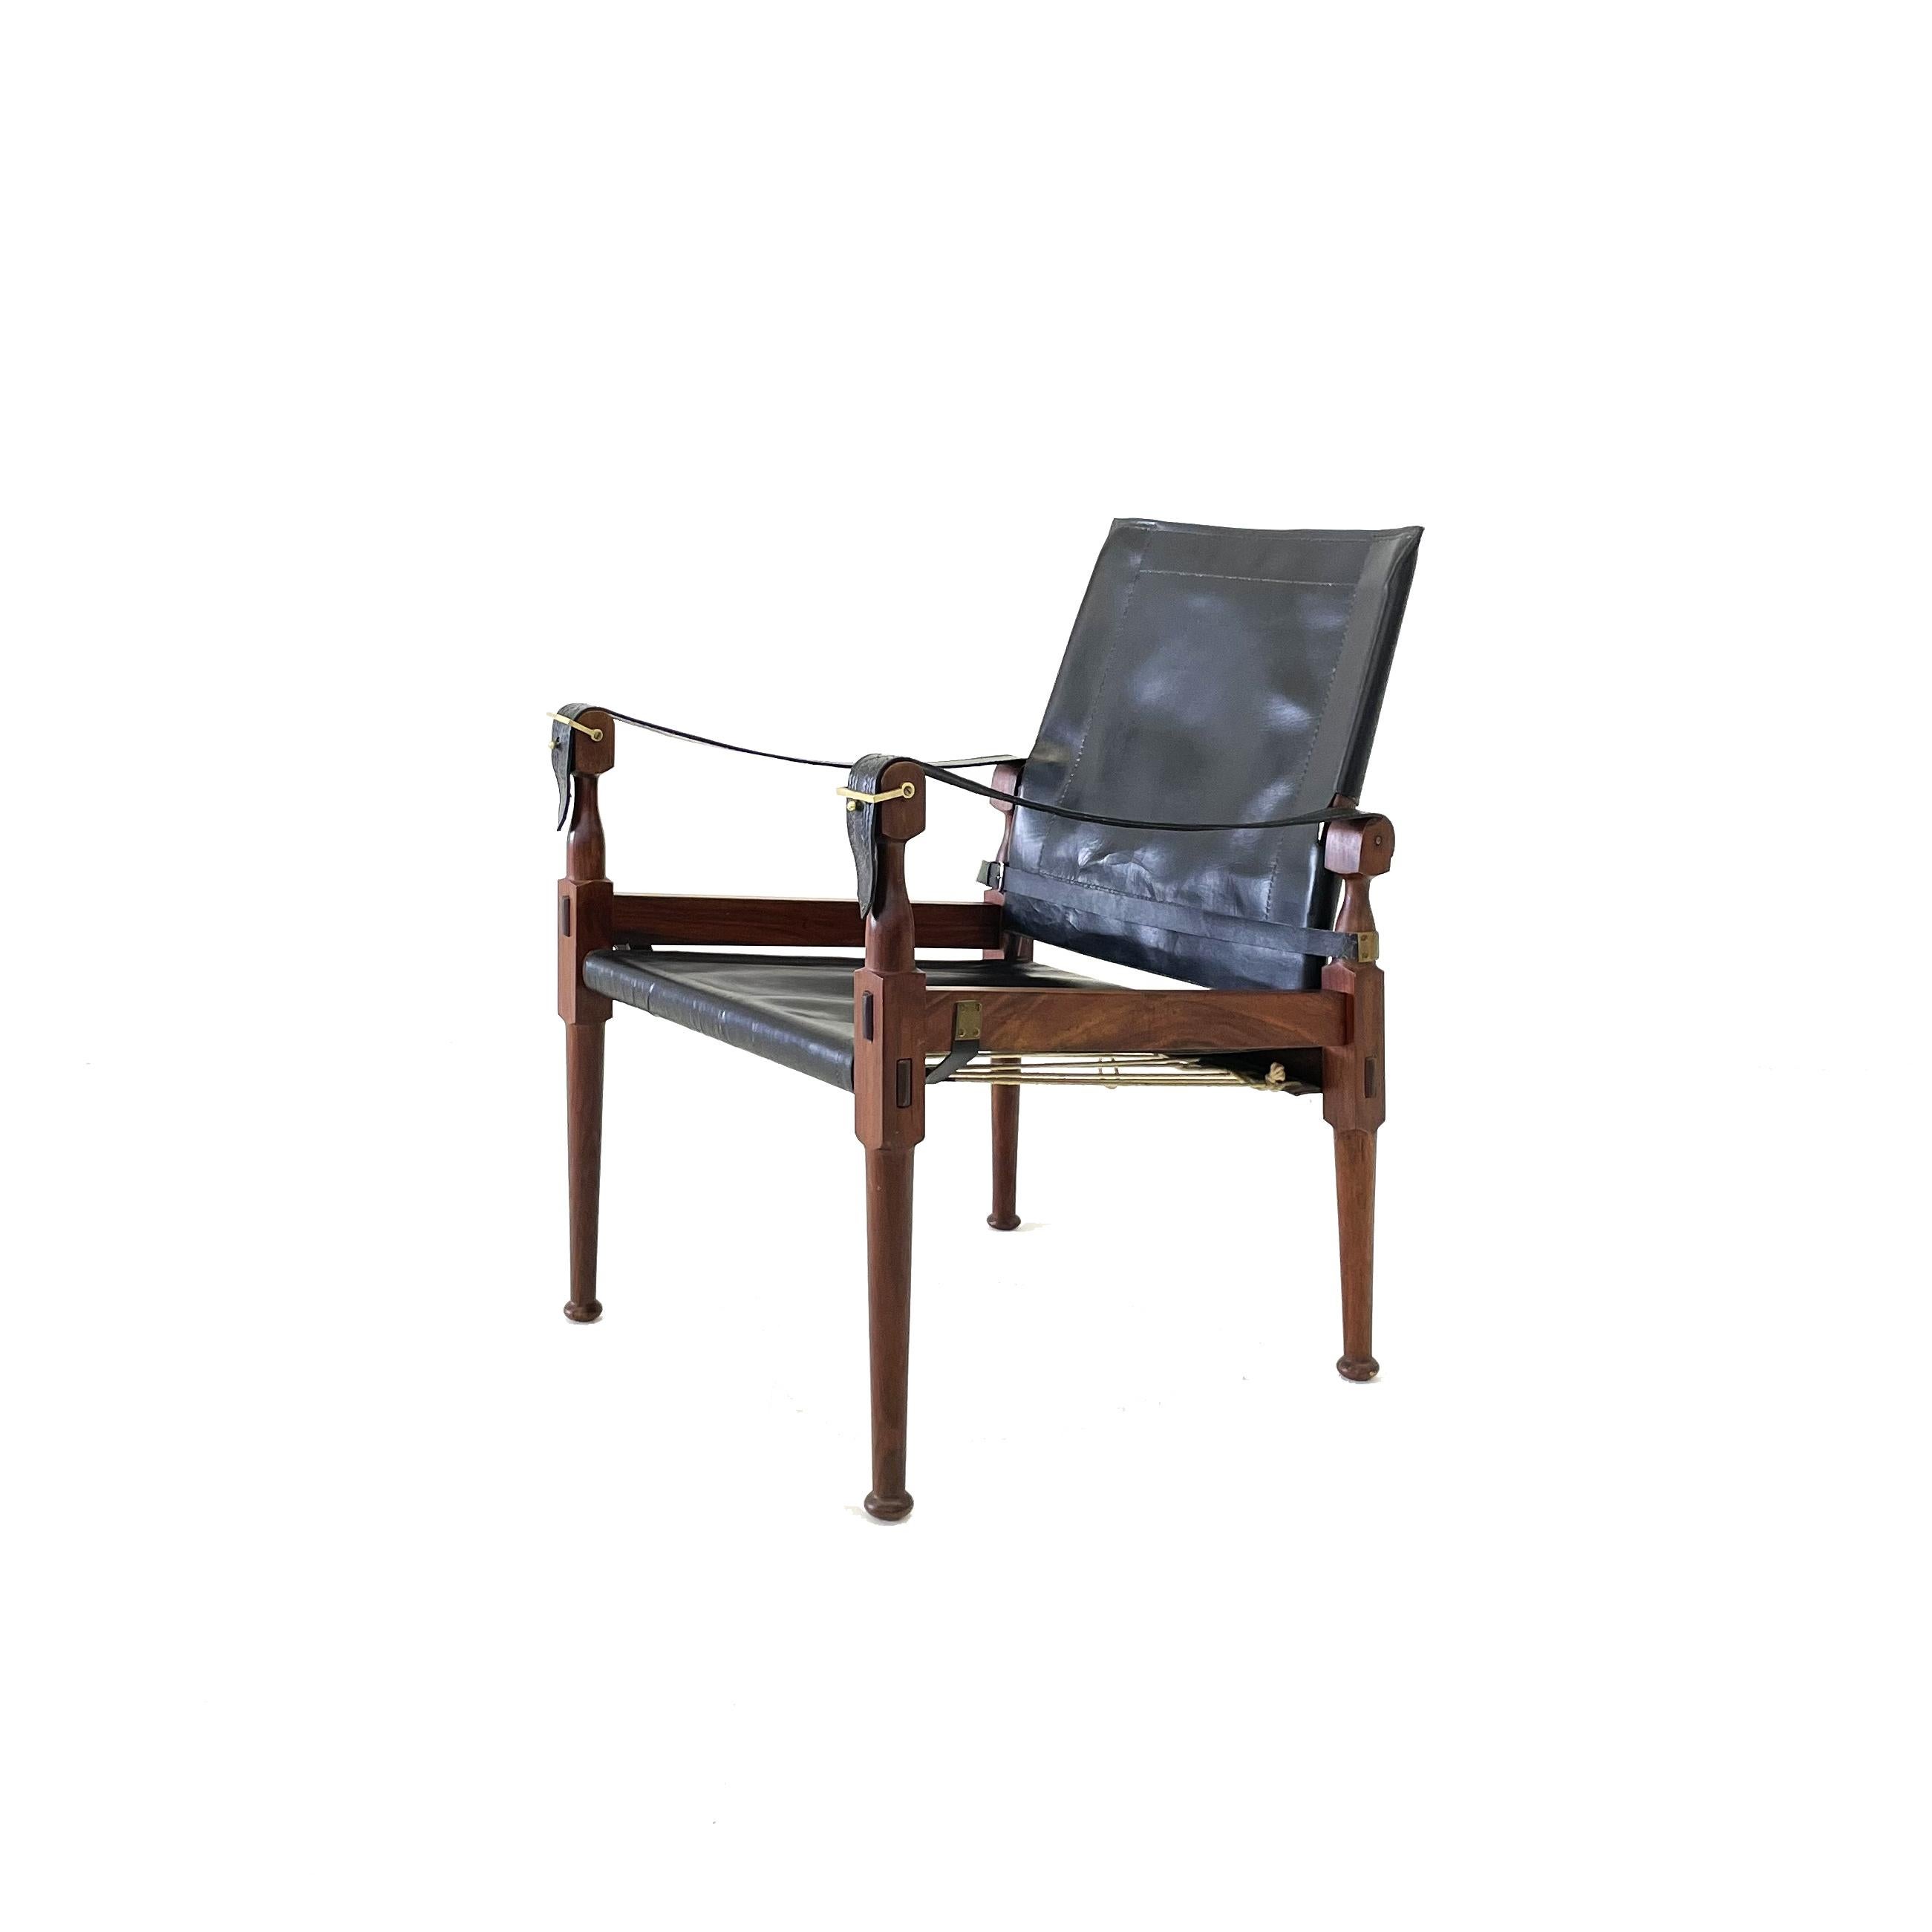 Sessel 'Safari', Holz, schwarzes Leder und Messing, Pakistan, 1970er Jahre

Dieser Sessel 'Safari' zeigt sehr elegante und gut durchdachte Linien in Kombination mit sorgfältig gearbeiteten Holzverbindungen. Das schwarze Leder mit mehreren Riemen